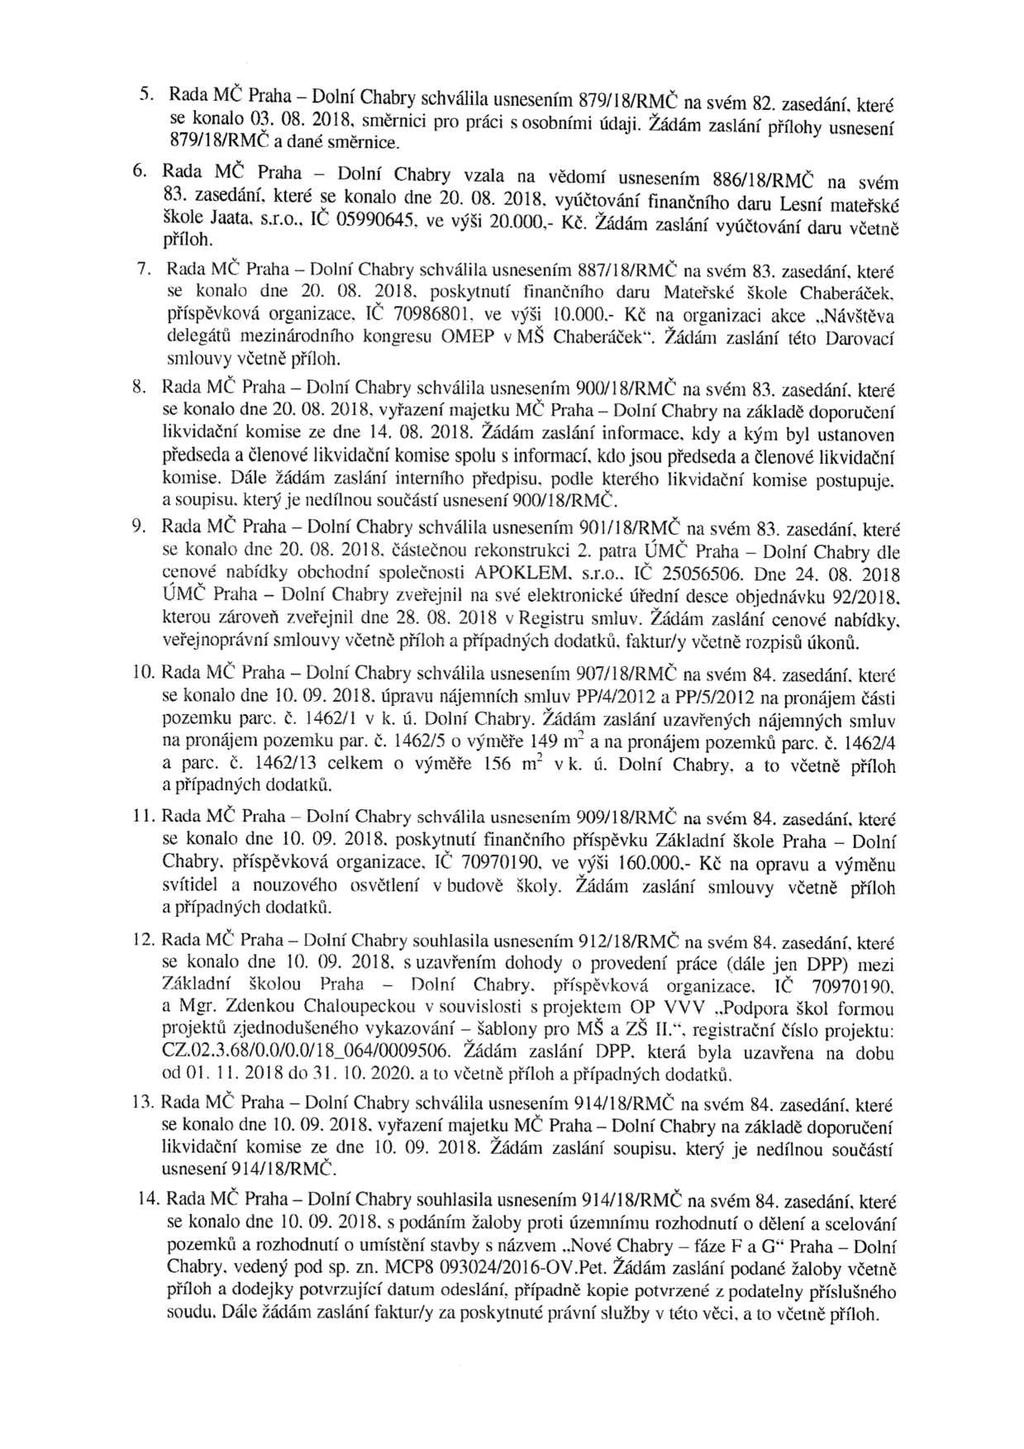 5. Rada MČ Praha - Dolní Chabry schválila usnesením 879/18/RMČ na svém 82. zasedání. které se konalo 03. 08. 2018. směrnici pro práci s osobními údaji.